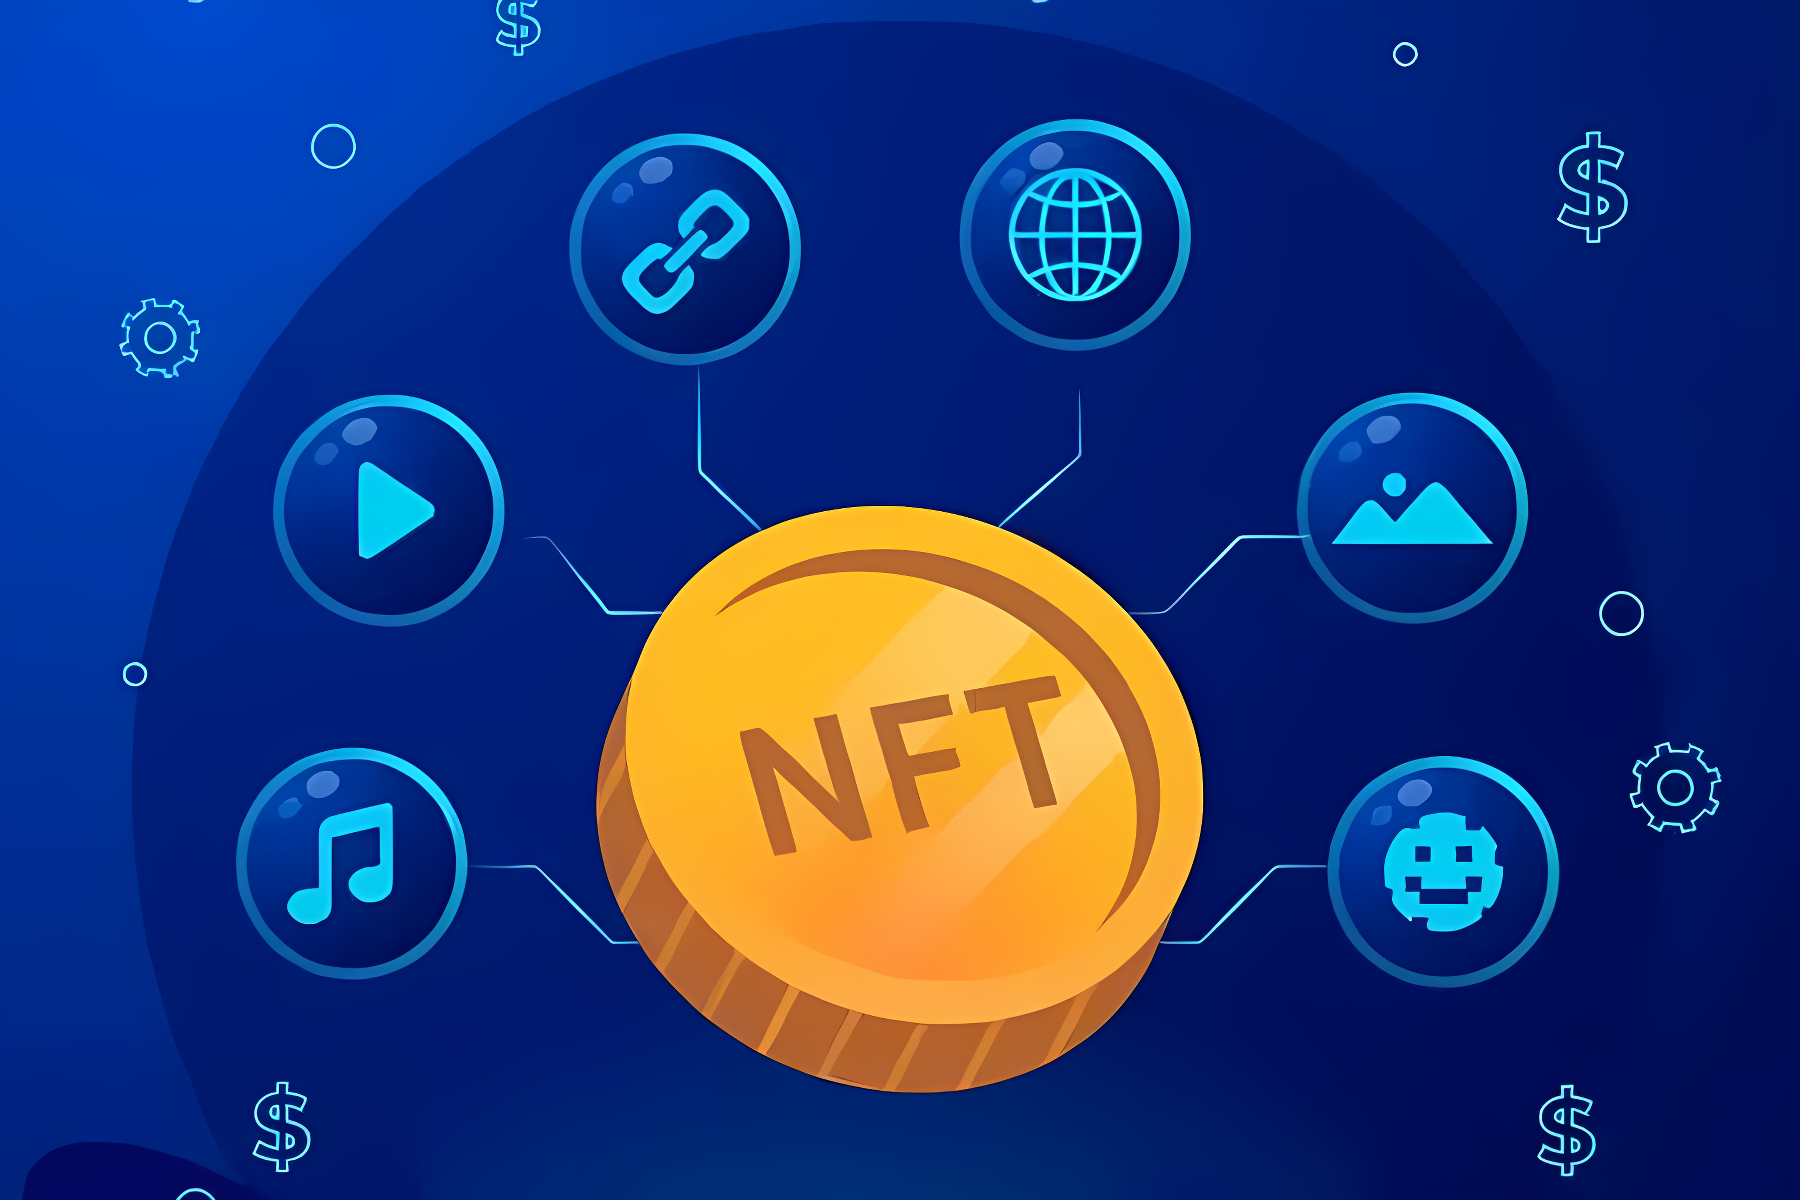 这张图片展示了一个代表NFT（非同质化代币）的金色硬币，周围有多个符号，包括音乐、视频、图片和地球等元素，背景是深蓝色。